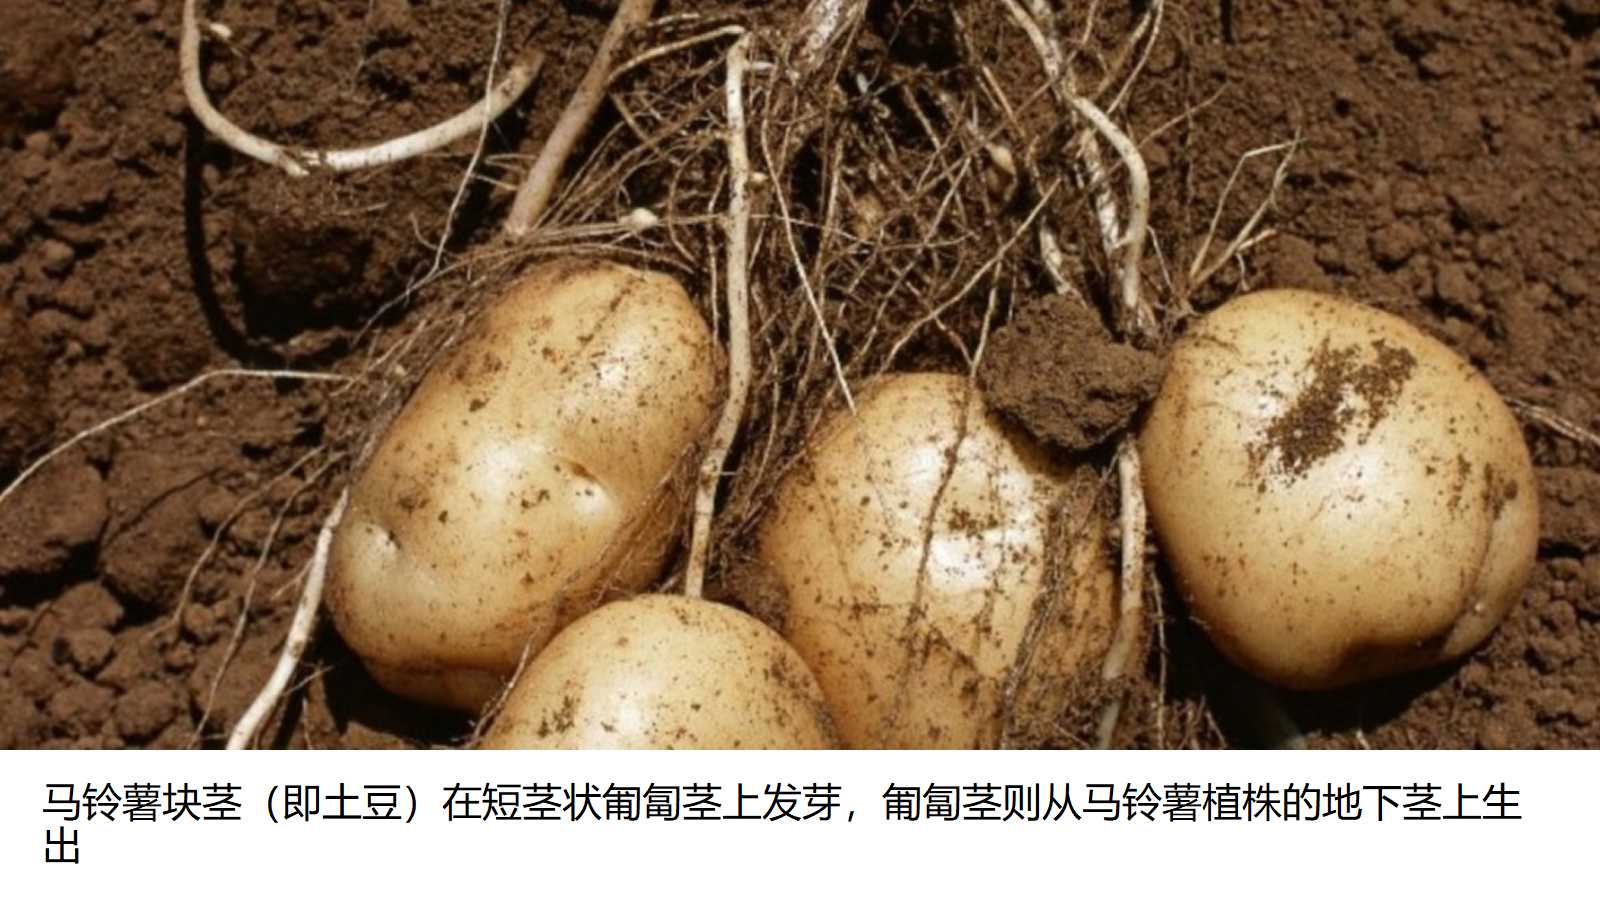 马铃薯块茎(即土豆)在短茎状匍匐茎上发芽,匍匐茎则从马铃薯植株的